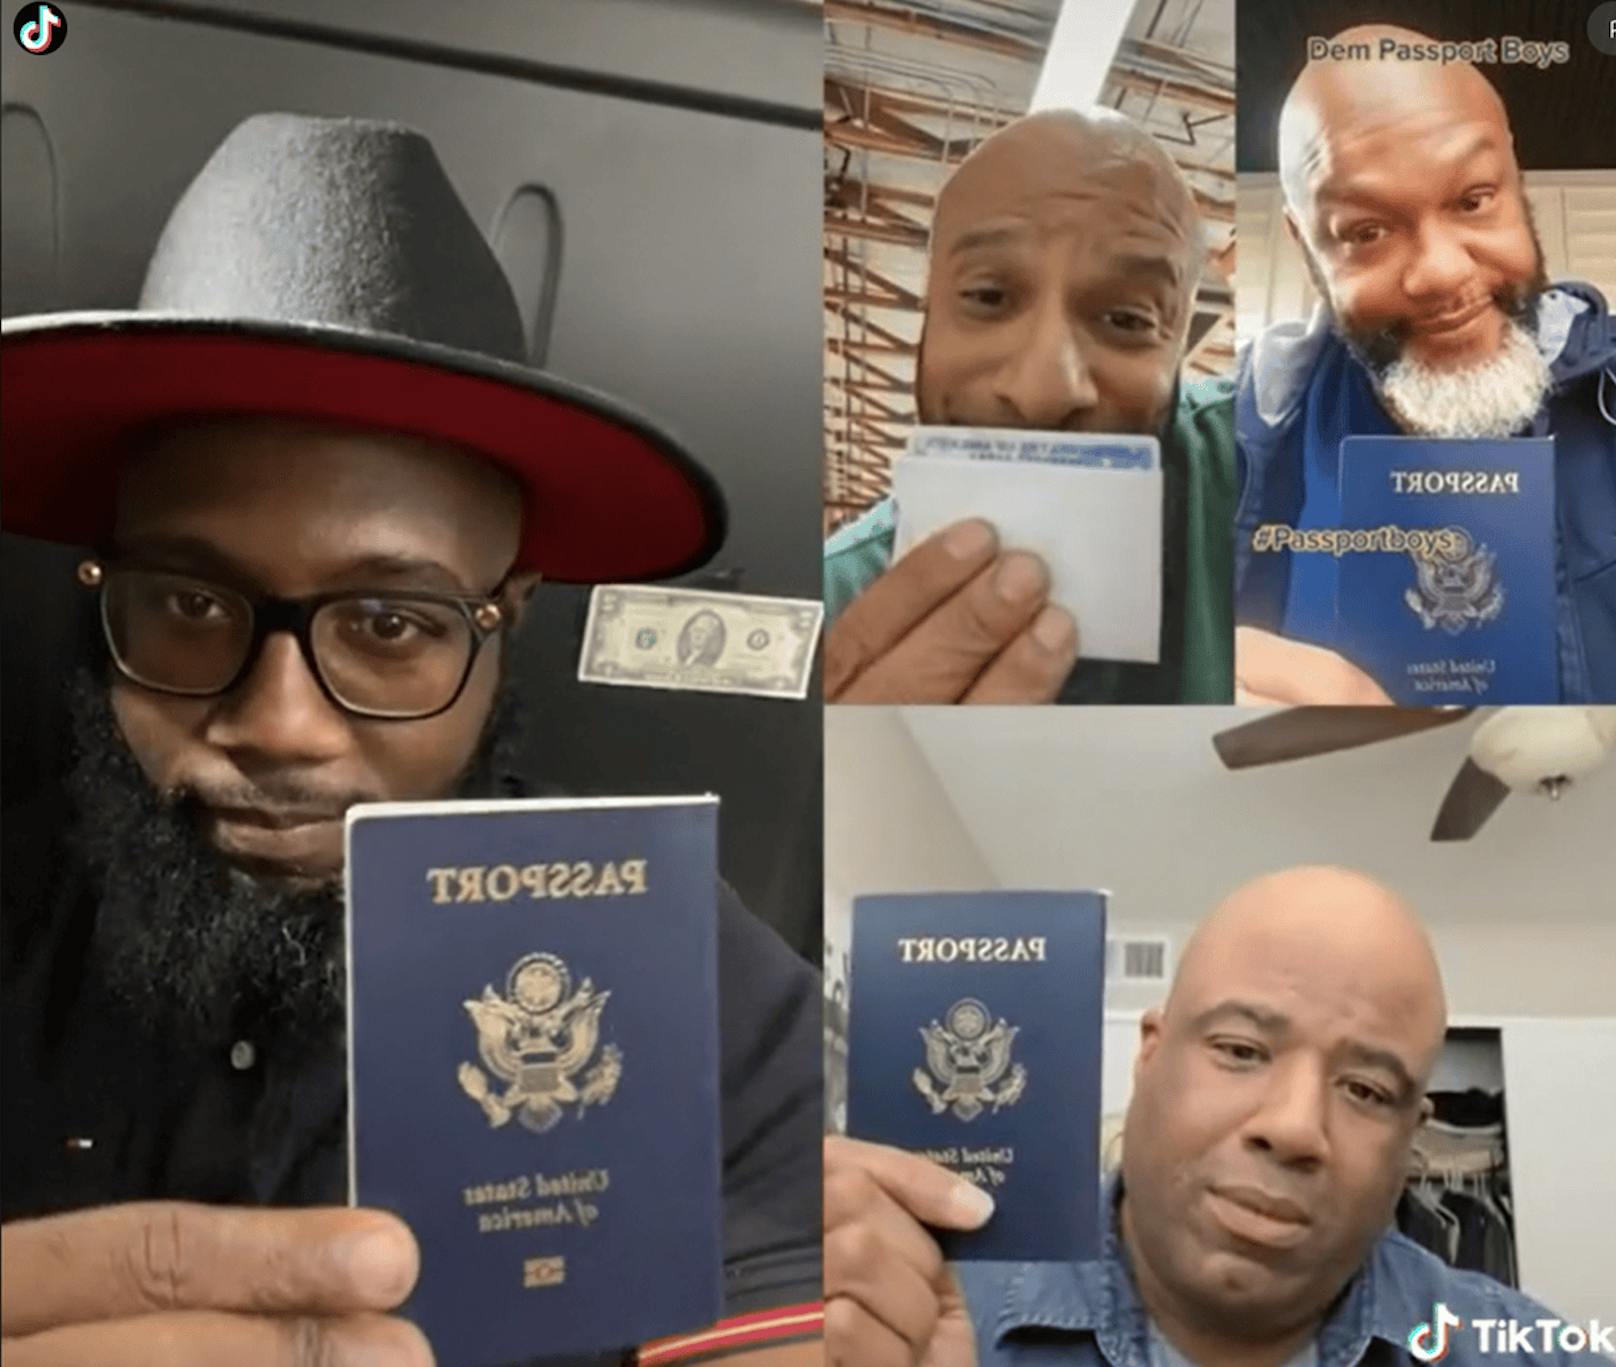 Passport-Bro-Trend: Sie suchen "traditionelle Frauen"